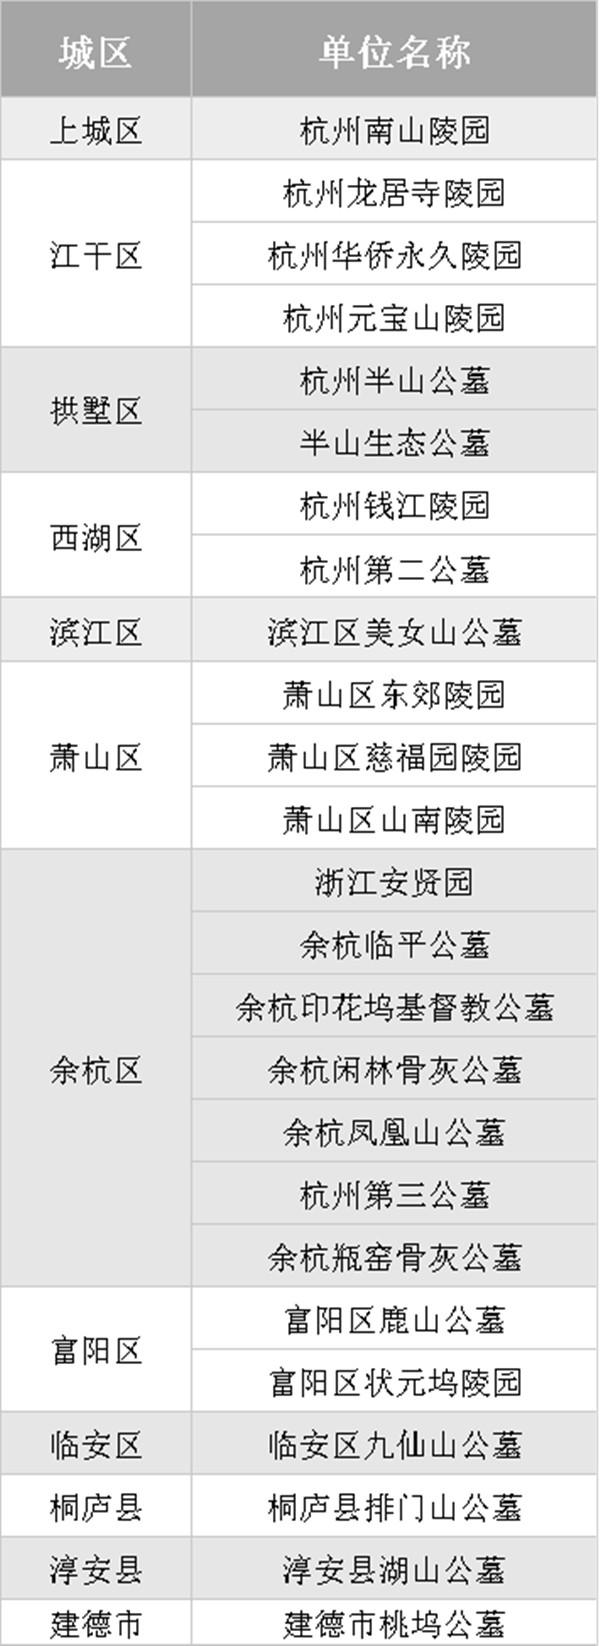 2020冬至杭州公墓预约时间公墓名单及预约步骤